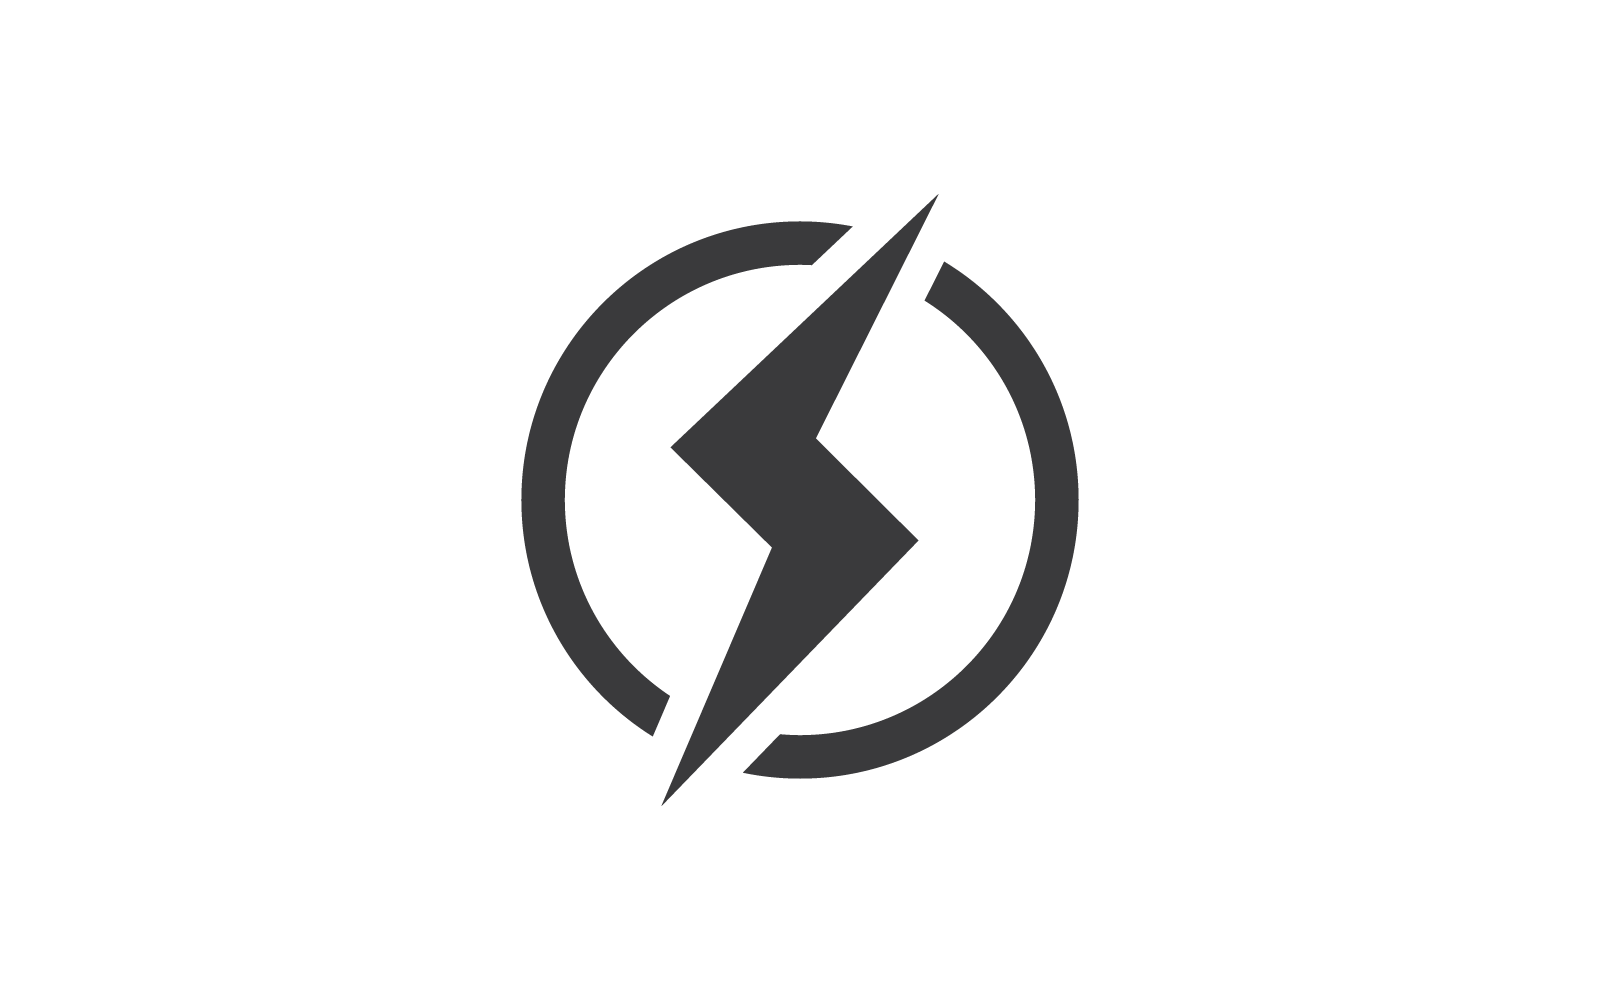 Power lightning power energy illustration logo